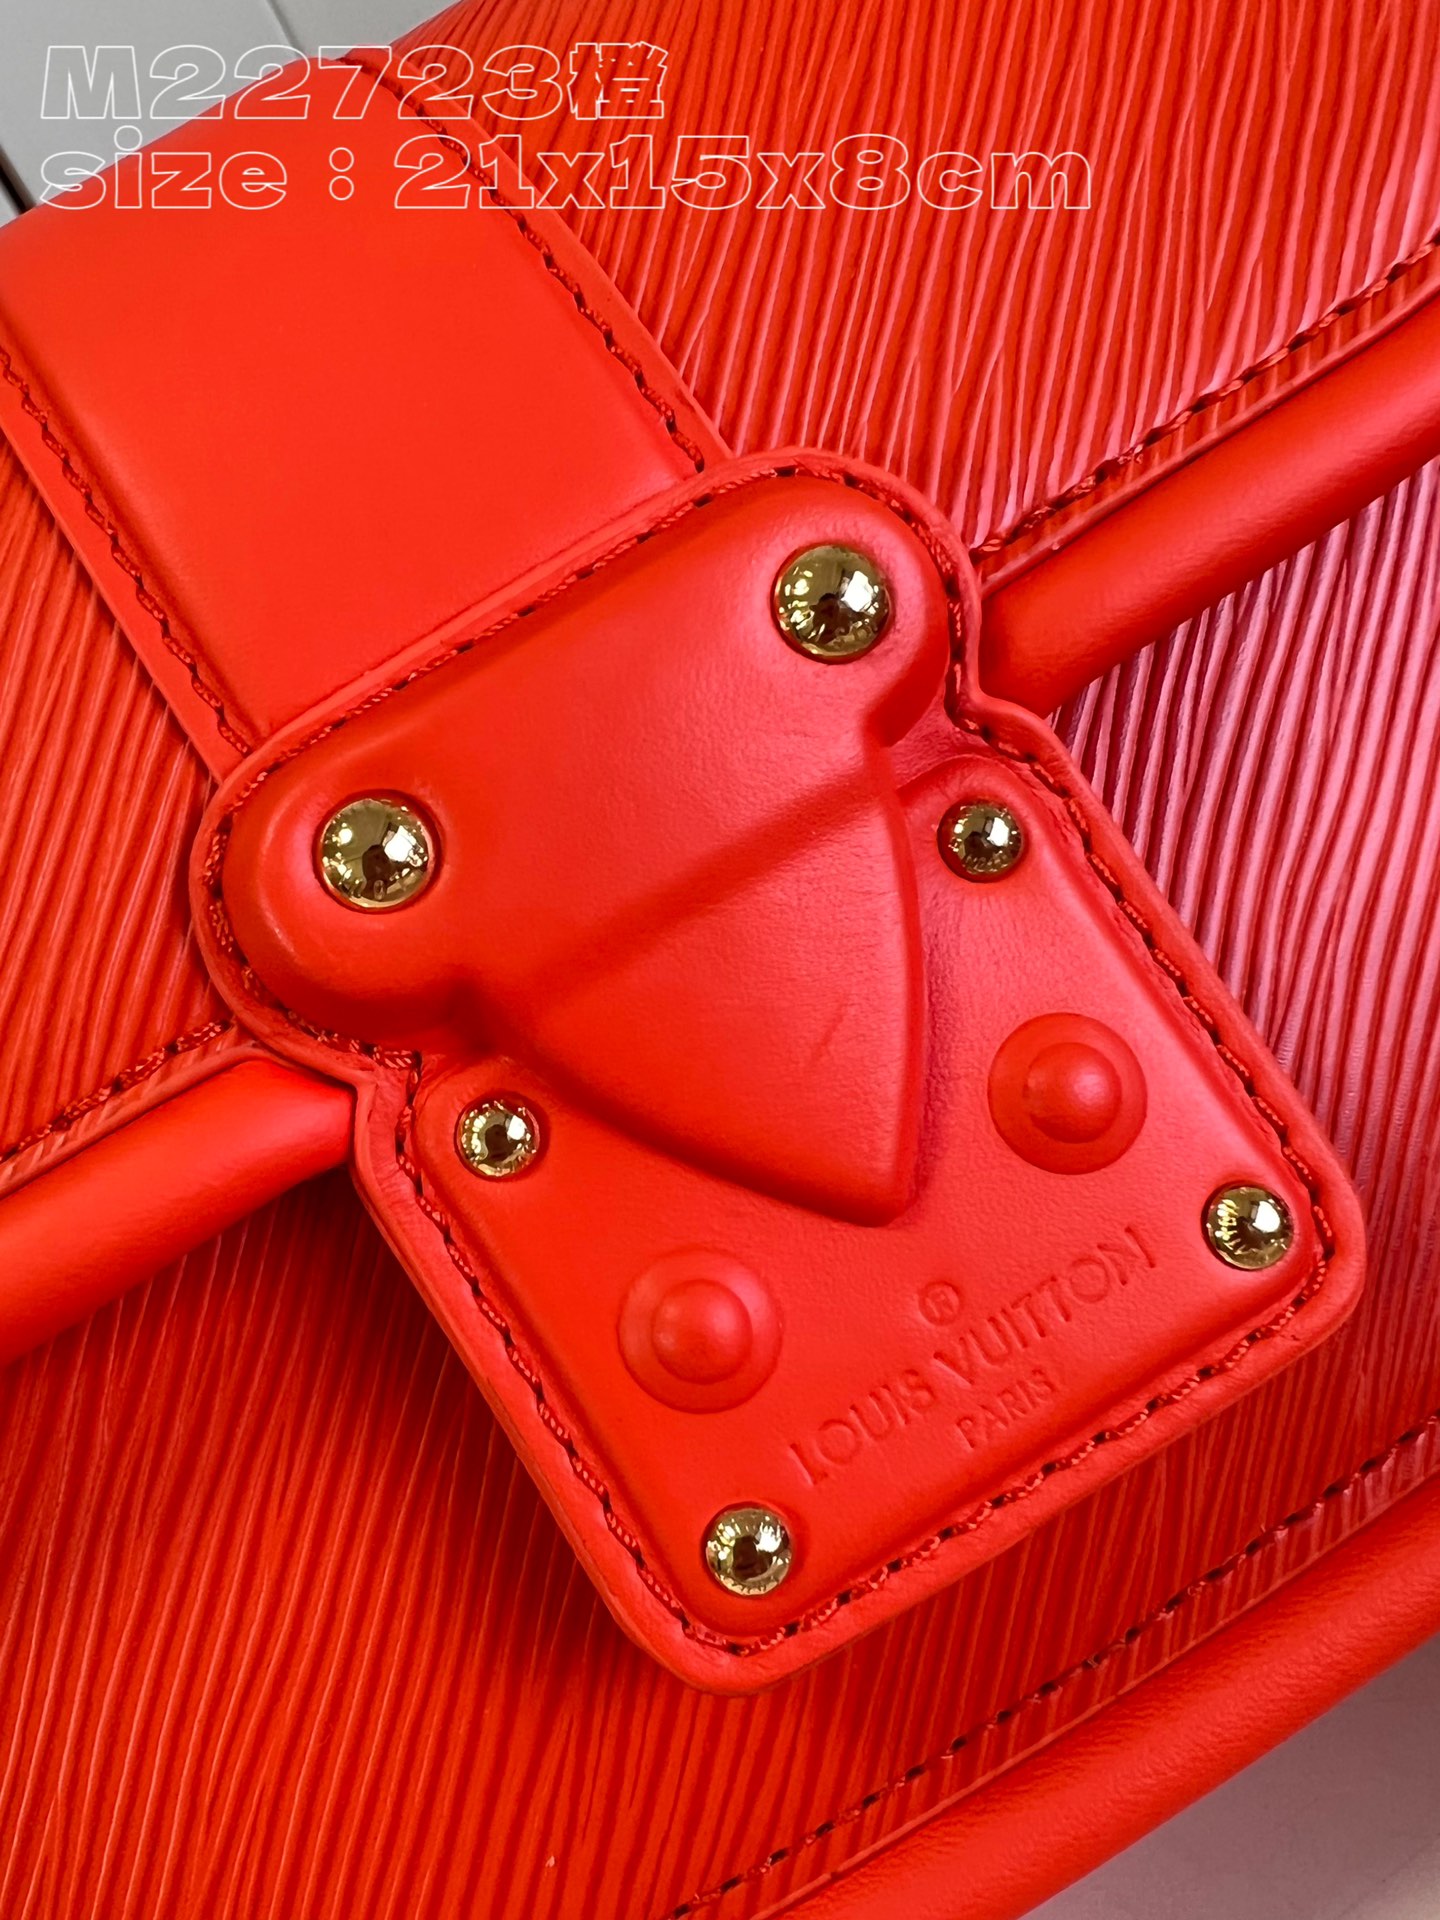 顶级原单M22723橙本款Hide&Seek手袋为Epi皮革渲染明媚色调以Toron辊压手柄和皮革包裹S